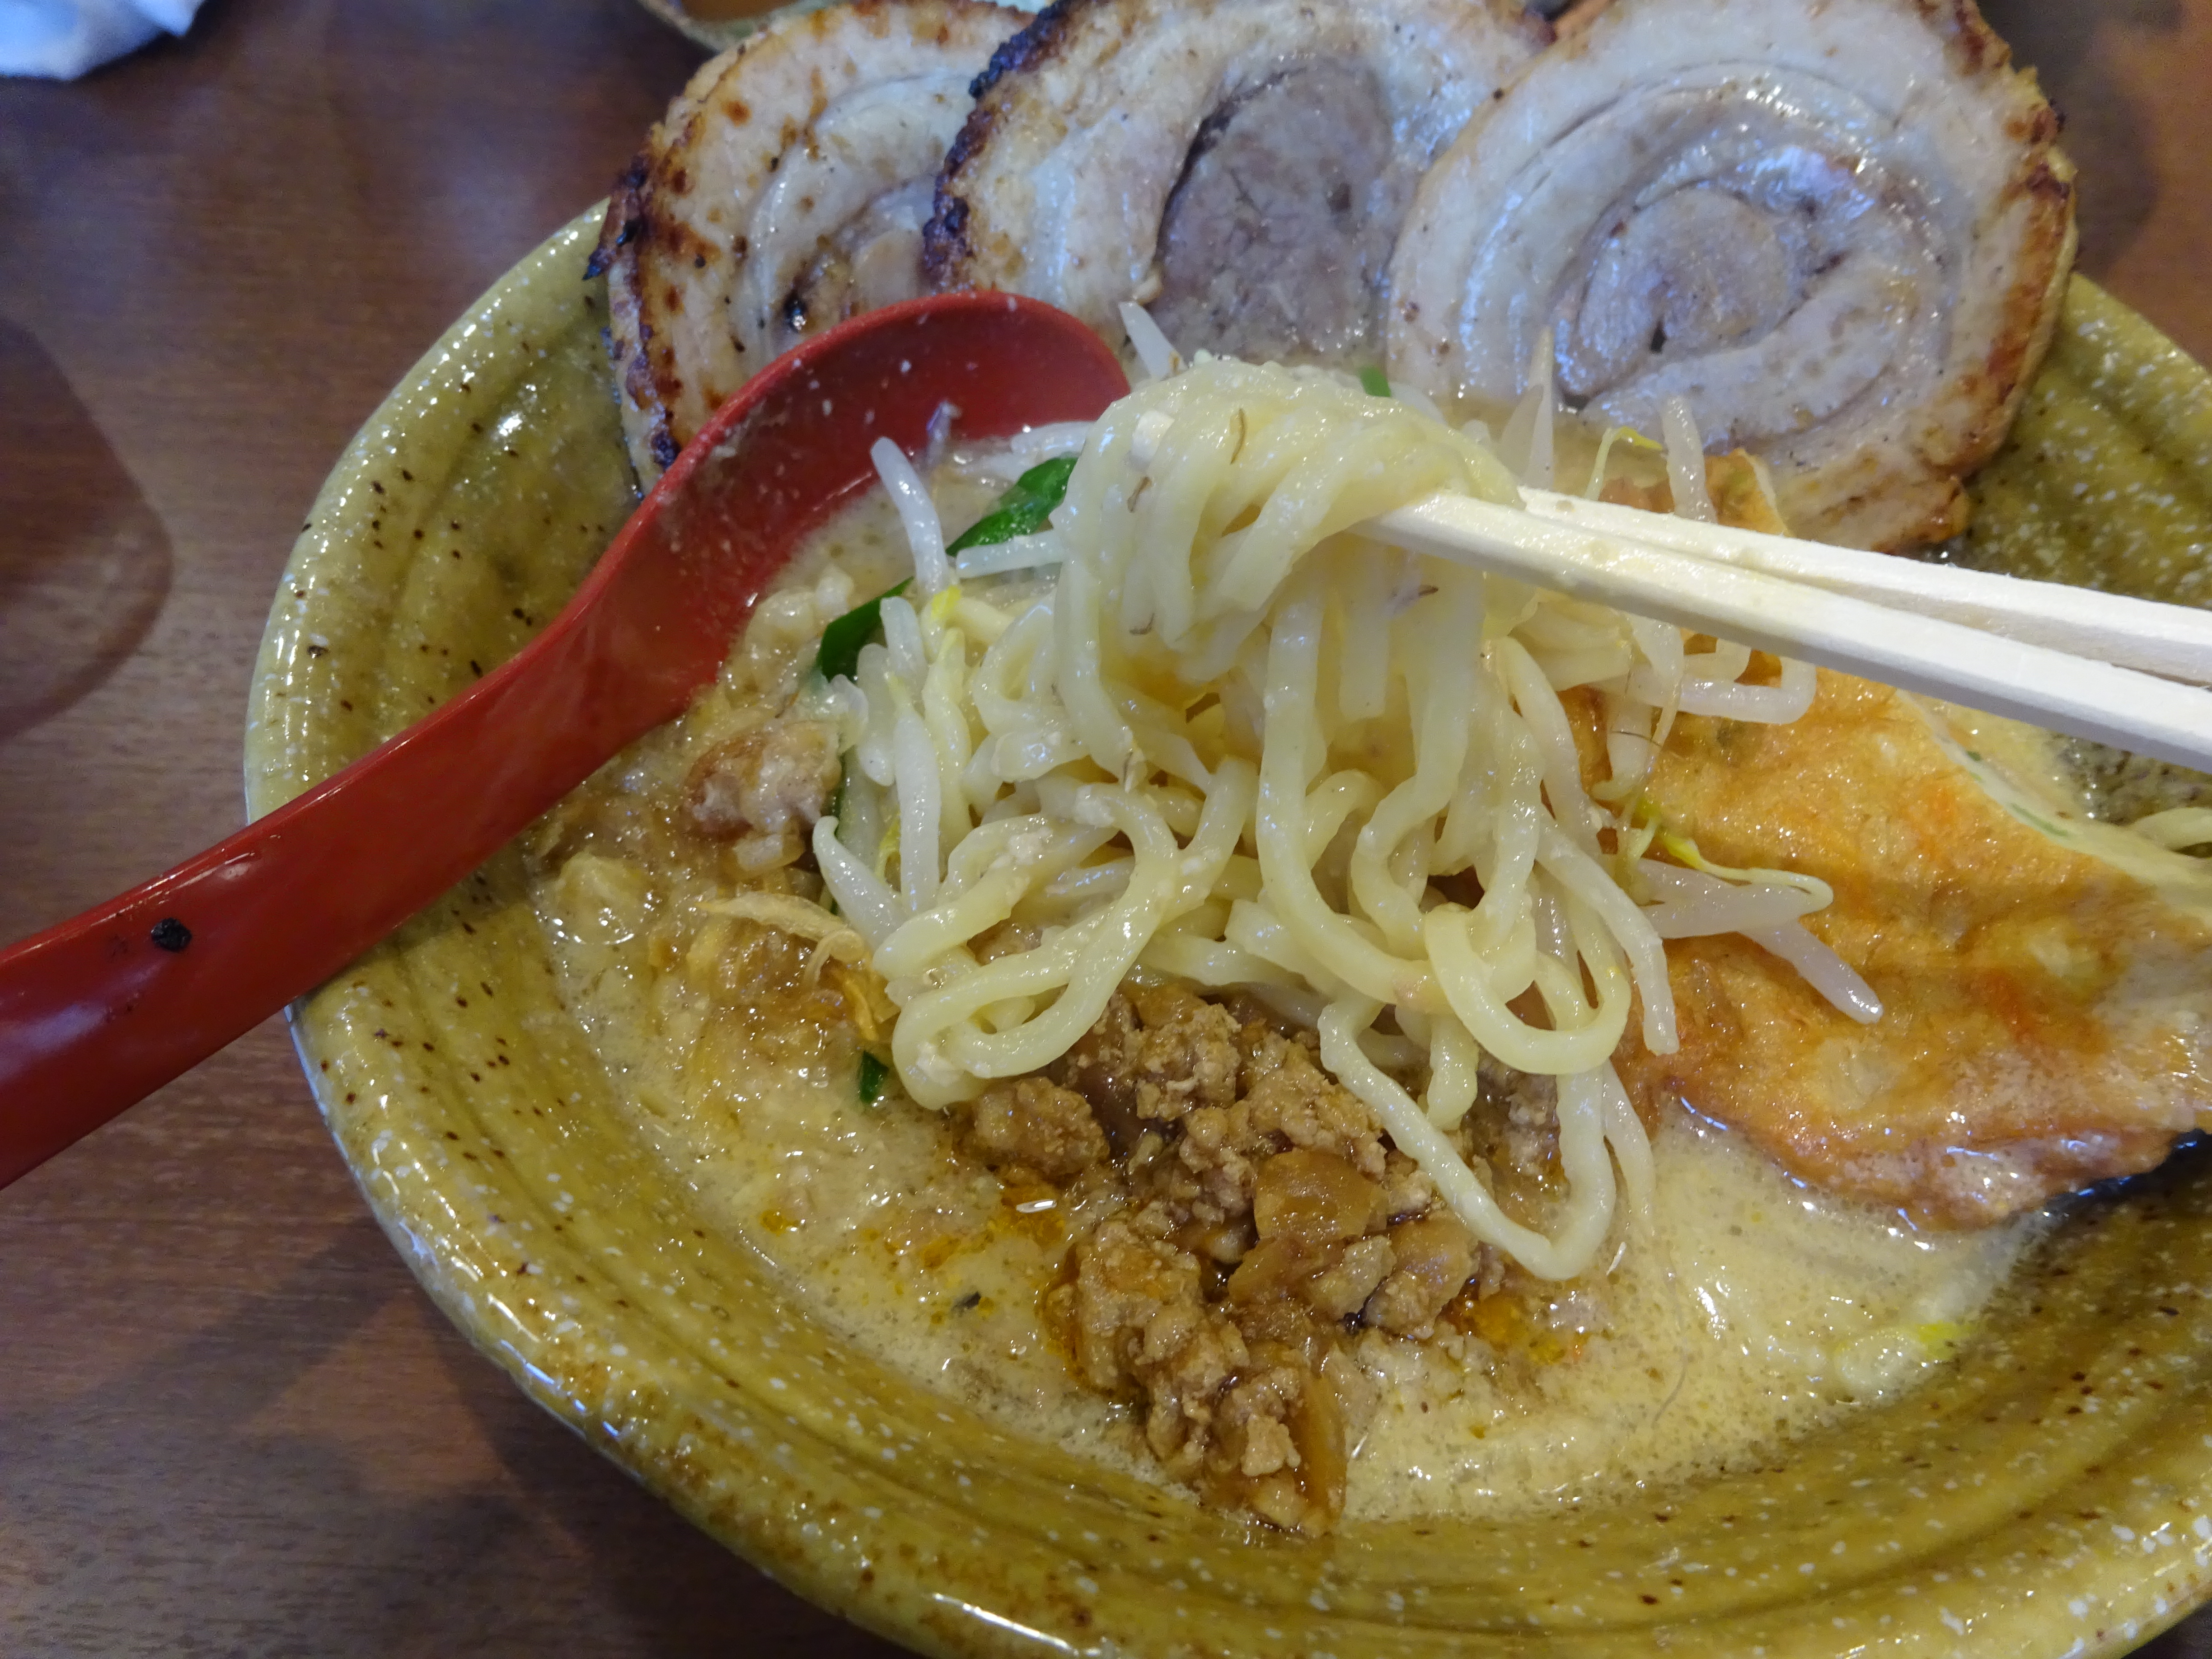 九州麦味噌味噌漬け炙りチャーシュー麺